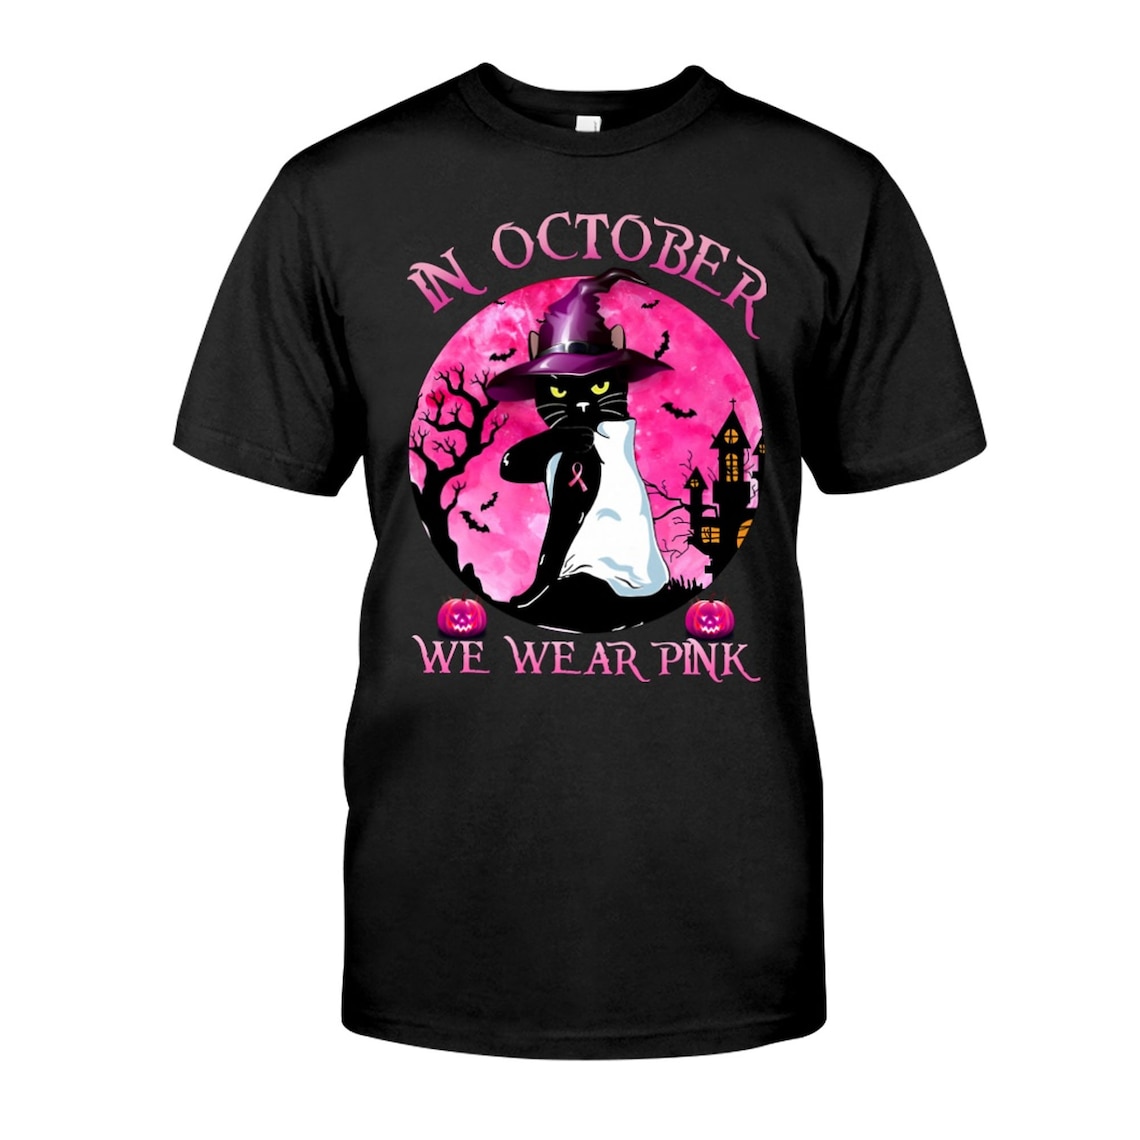 In October We Wear Pink Black Cat Halloween T Shirt